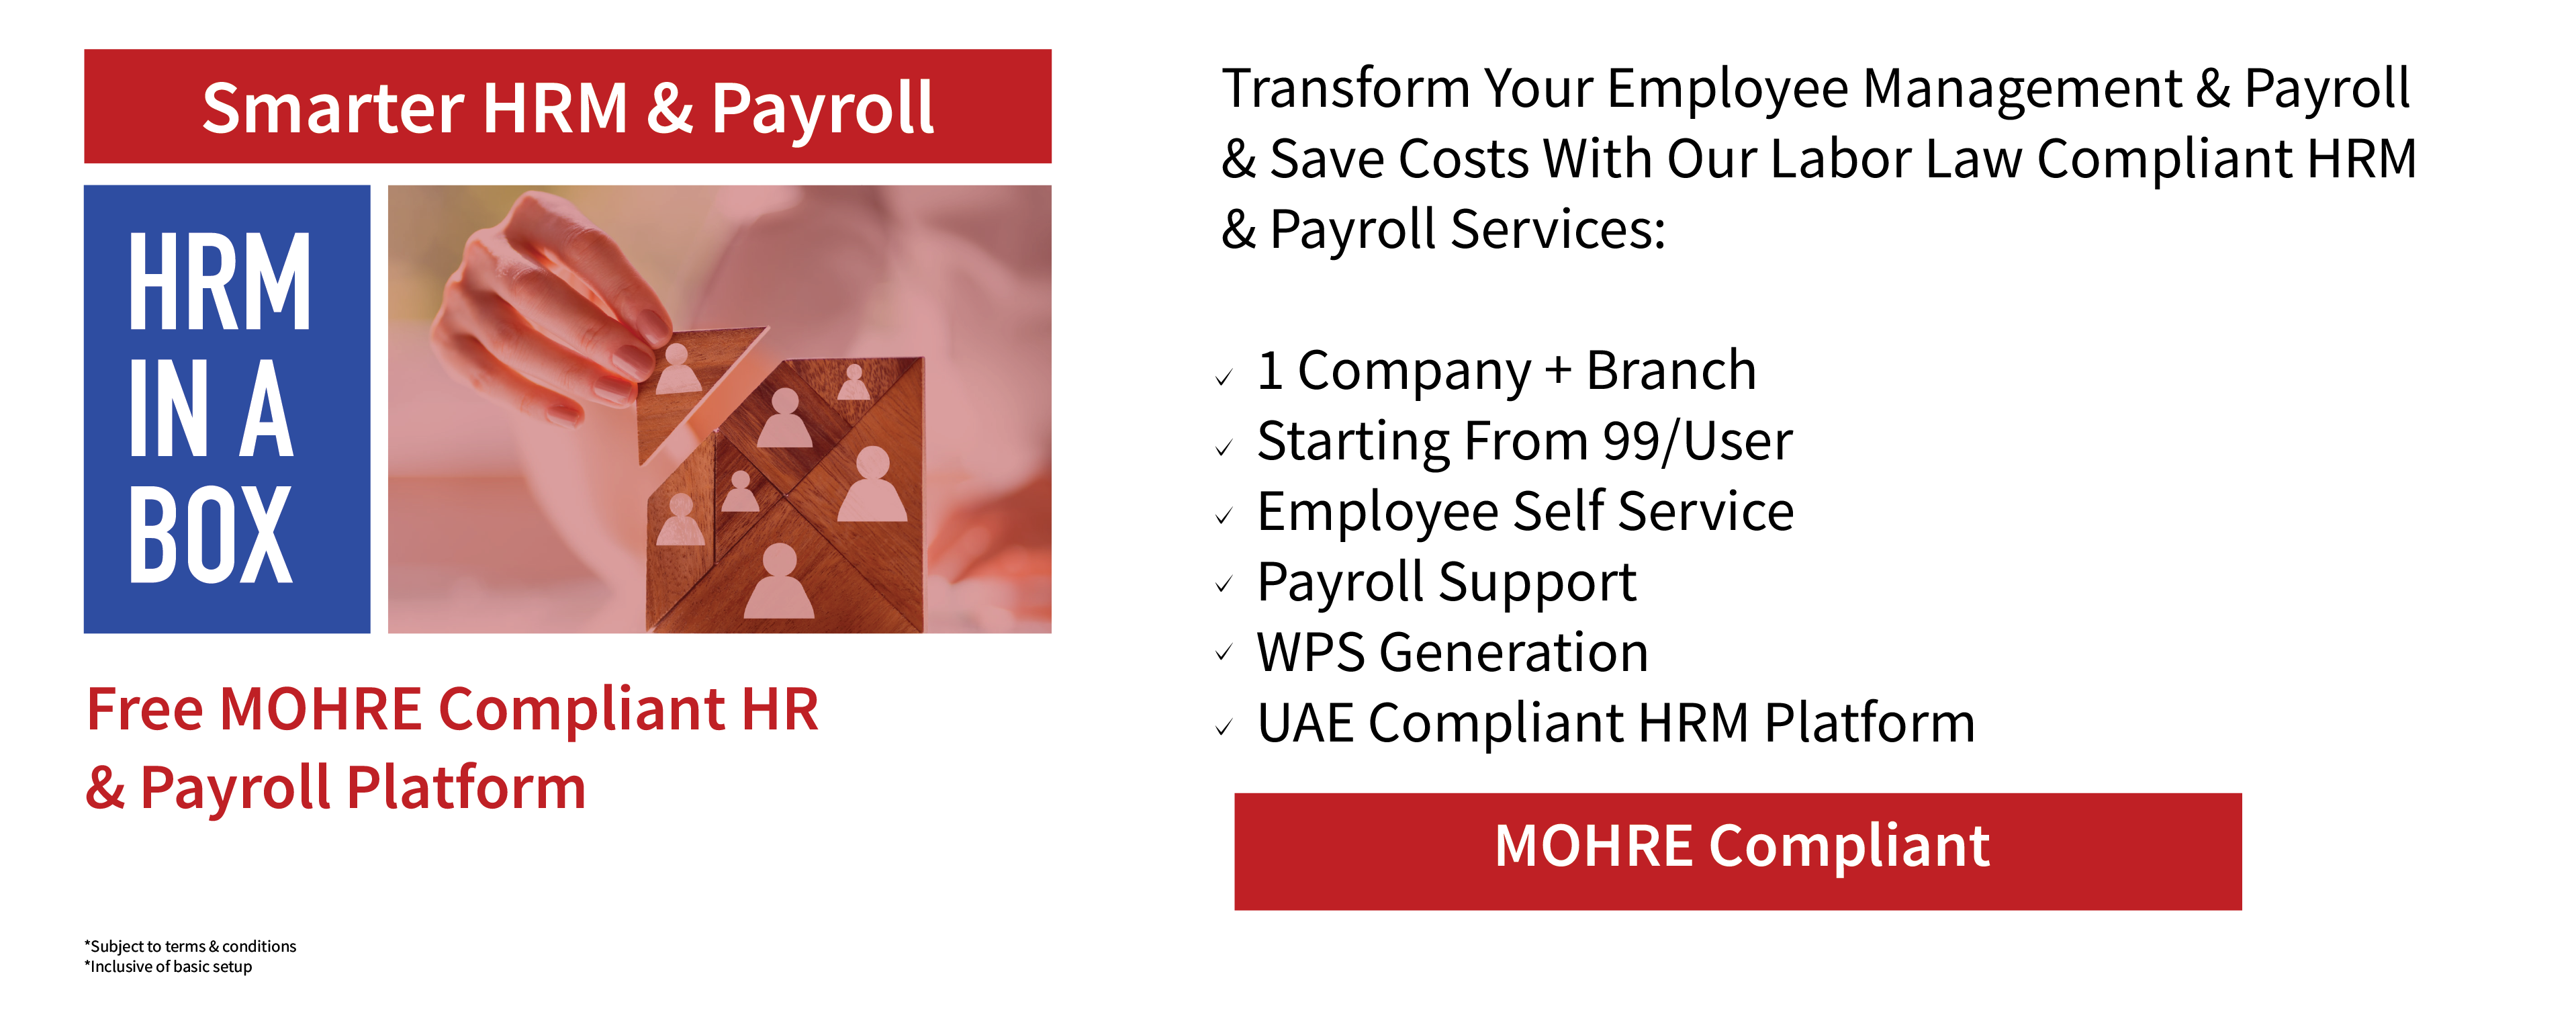 Employee Management & Payroll